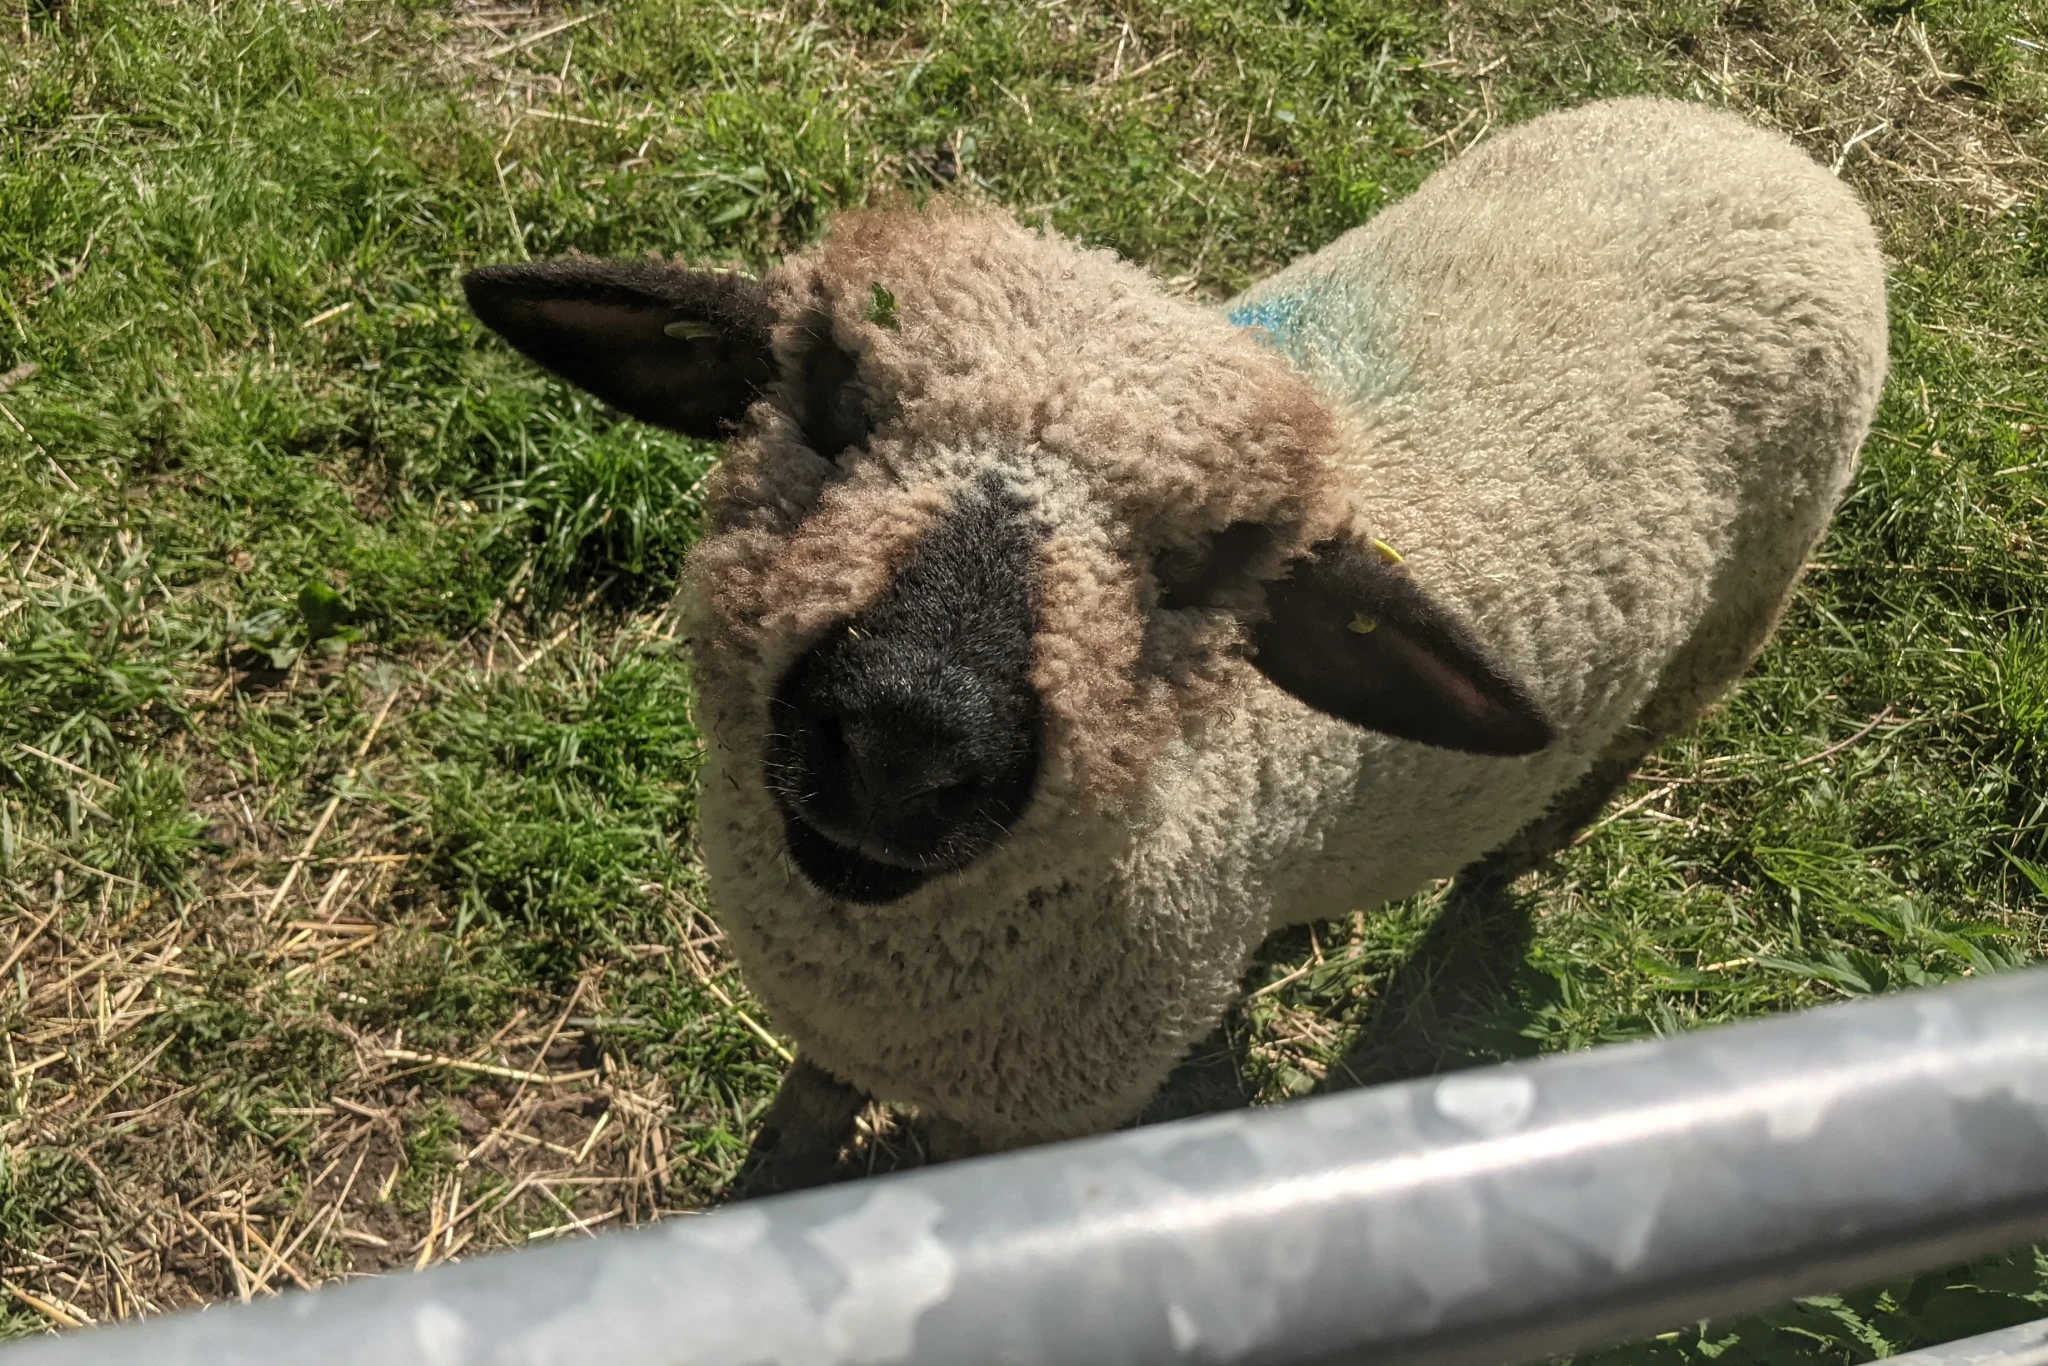 A lamb looks up towards the camera